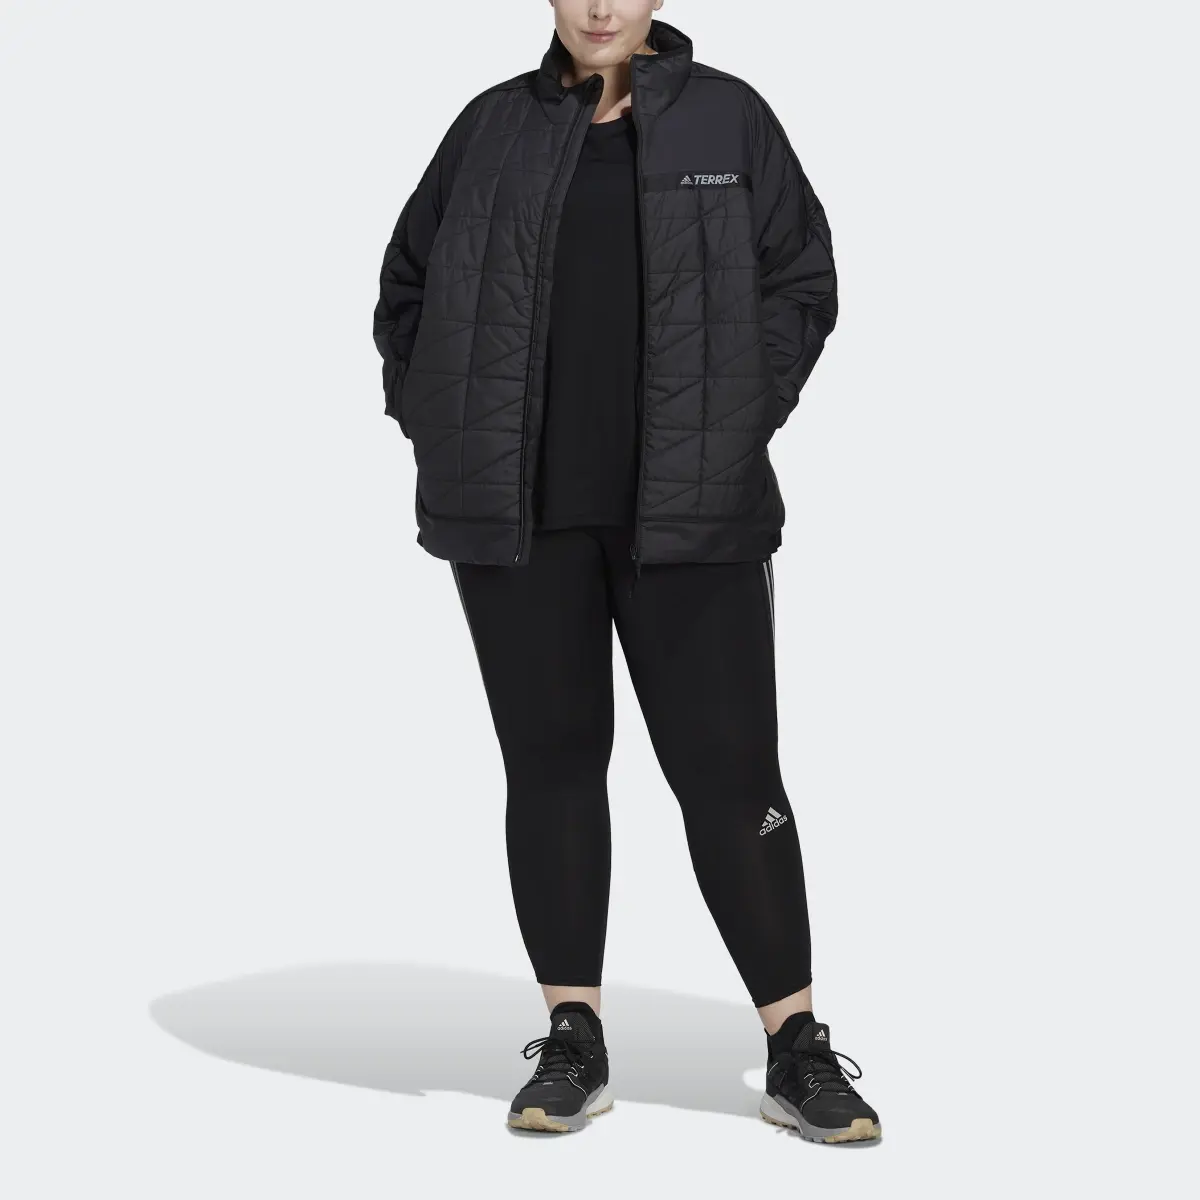 Adidas TERREX Multi Insulated Jacke – Große Größen. 1